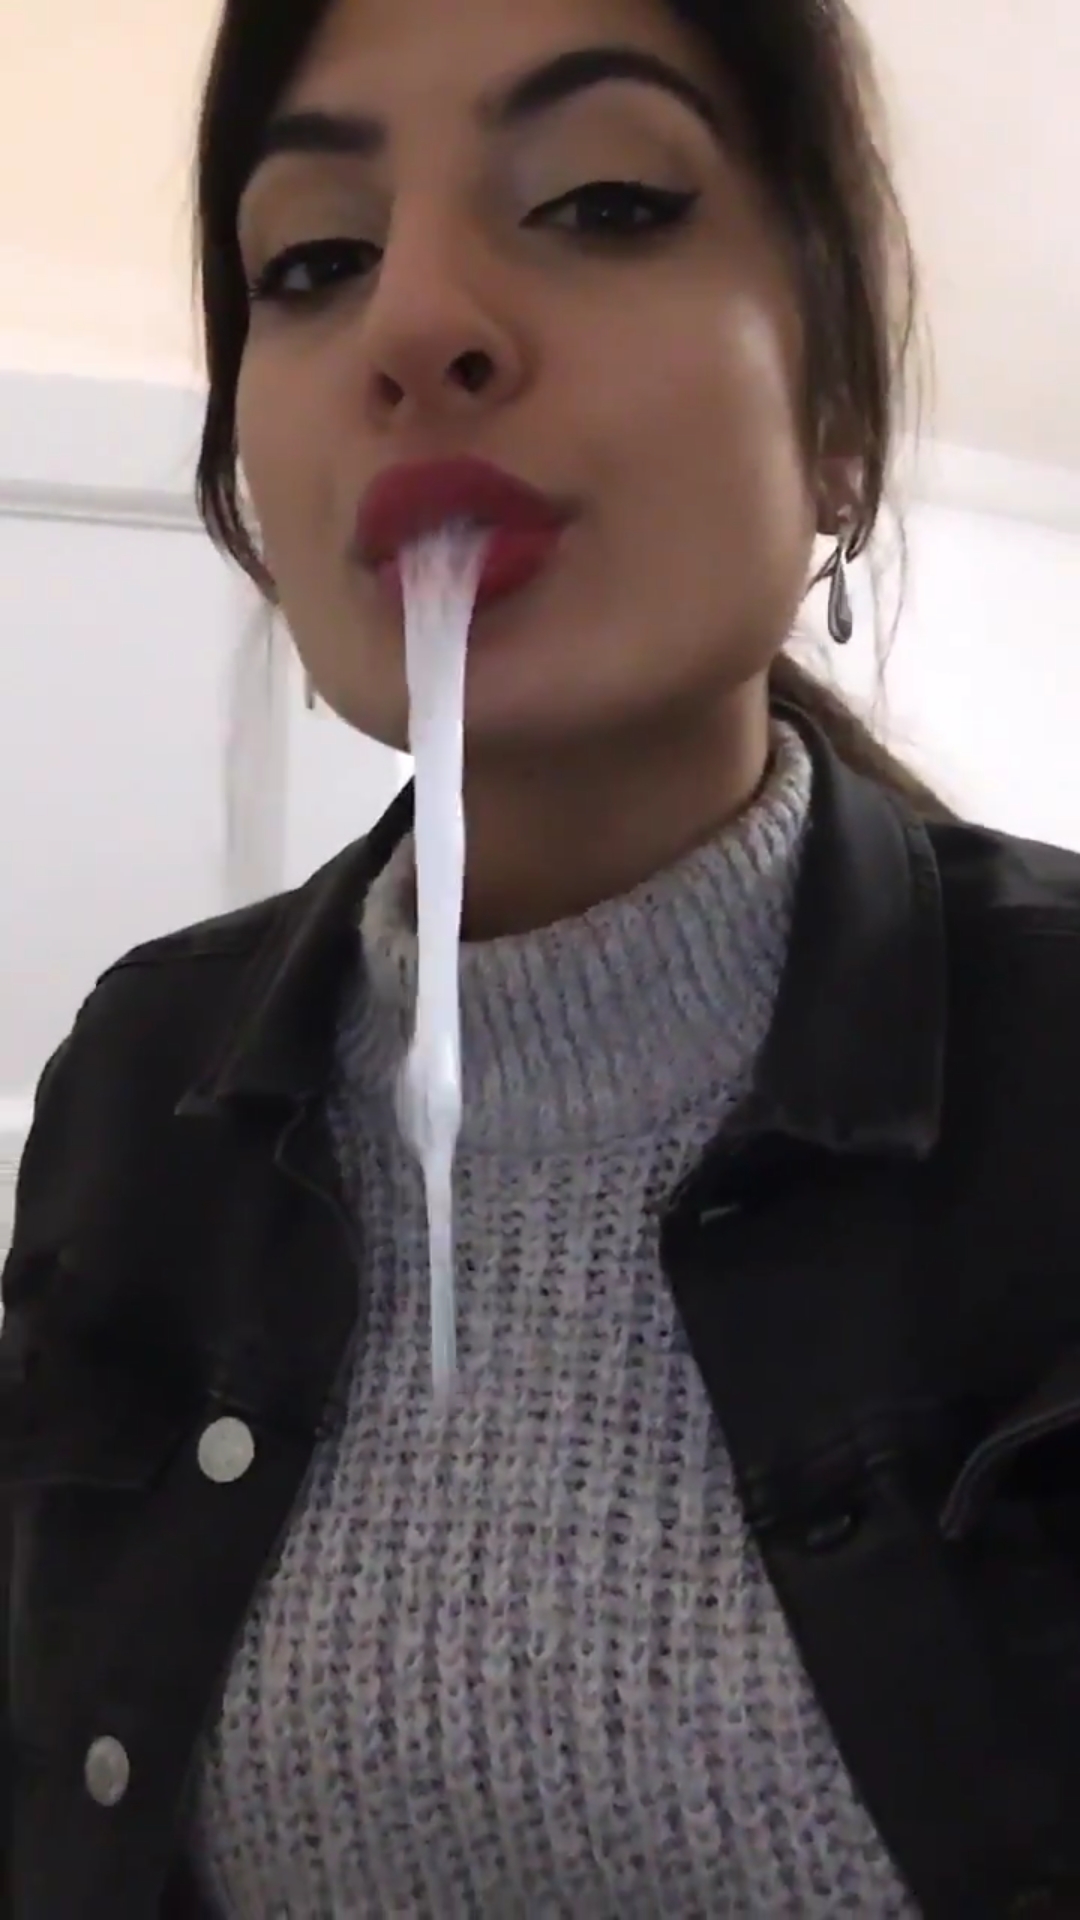 Spitting girl - video 121